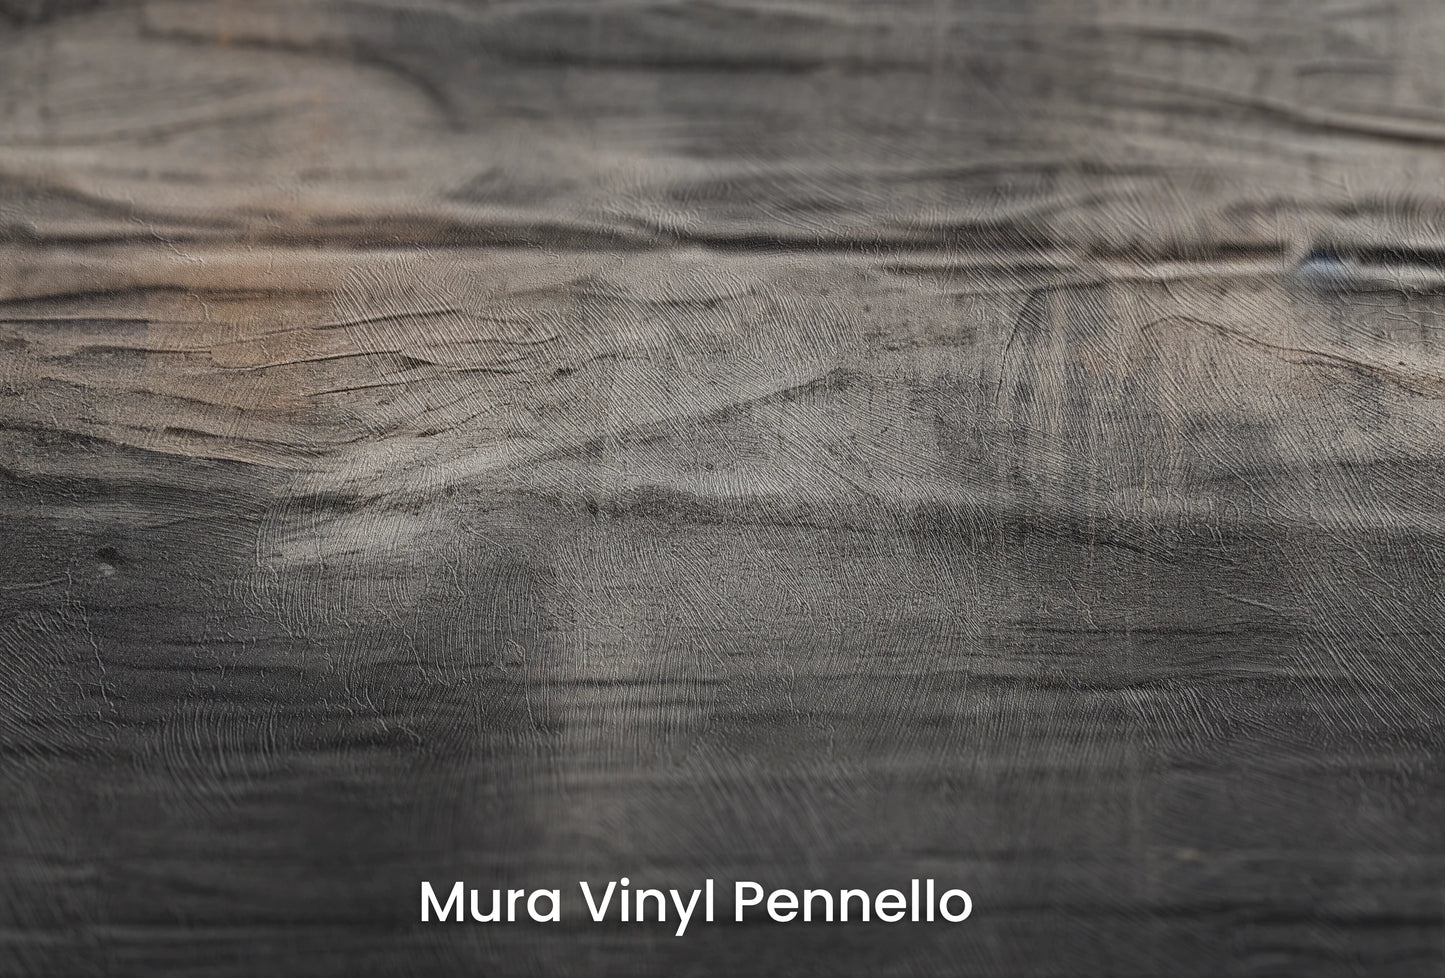 Zbliżenie na artystyczną fototapetę o nazwie Burnt Umber Wave na podłożu Mura Vinyl Pennello - faktura pociągnięć pędzla malarskiego.